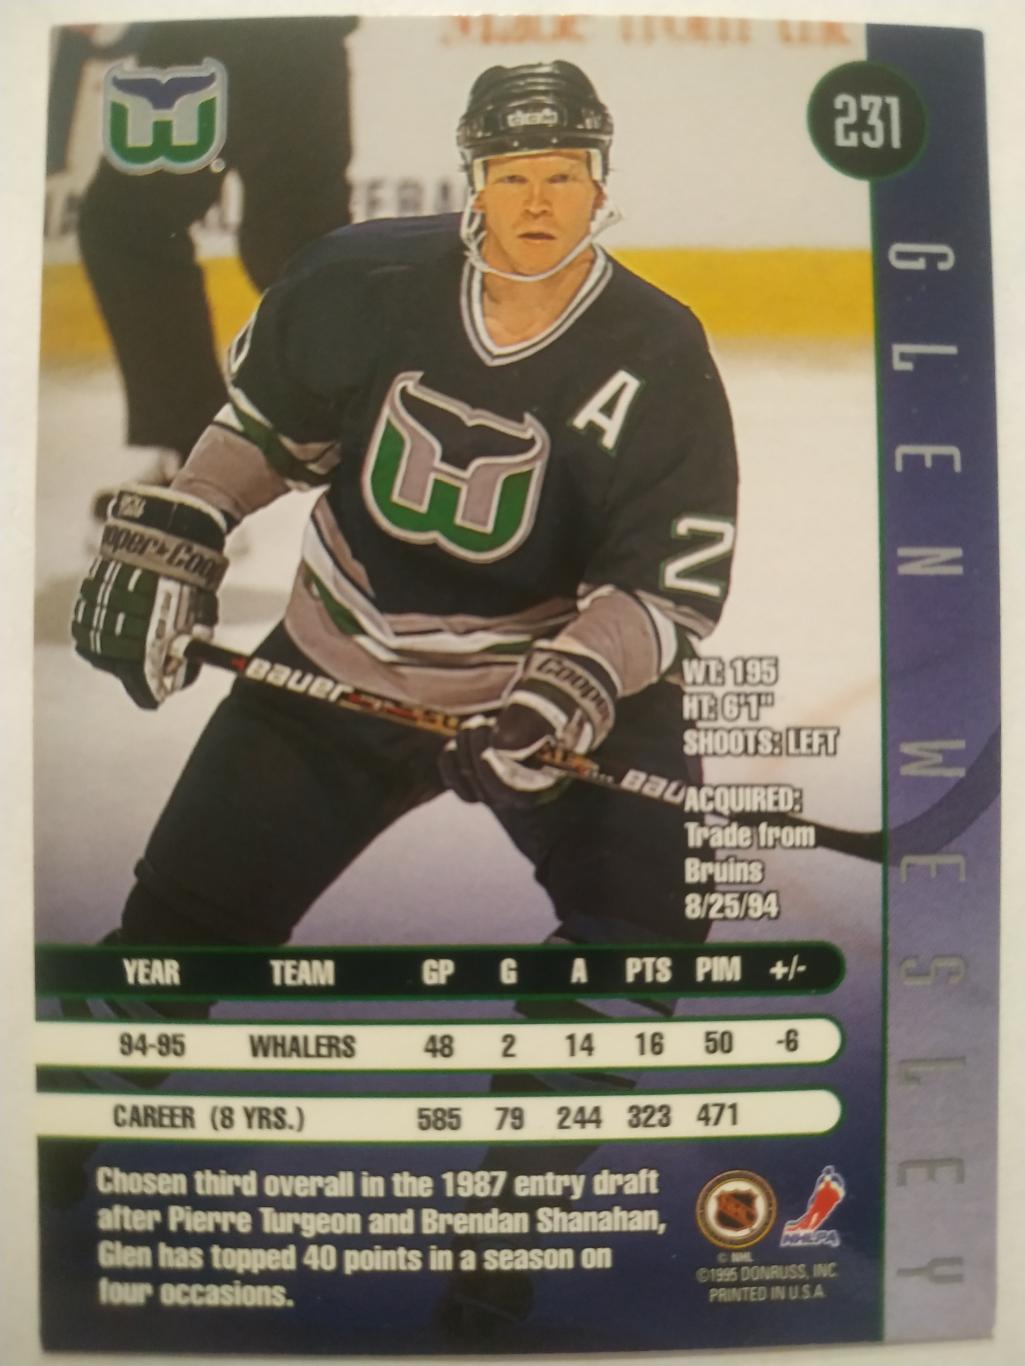 ХОККЕЙ КАРТОЧКА НХЛ DONRUSS LEAF 1995-96 GLEN WESLEY HARFORD WHALERS #231 1